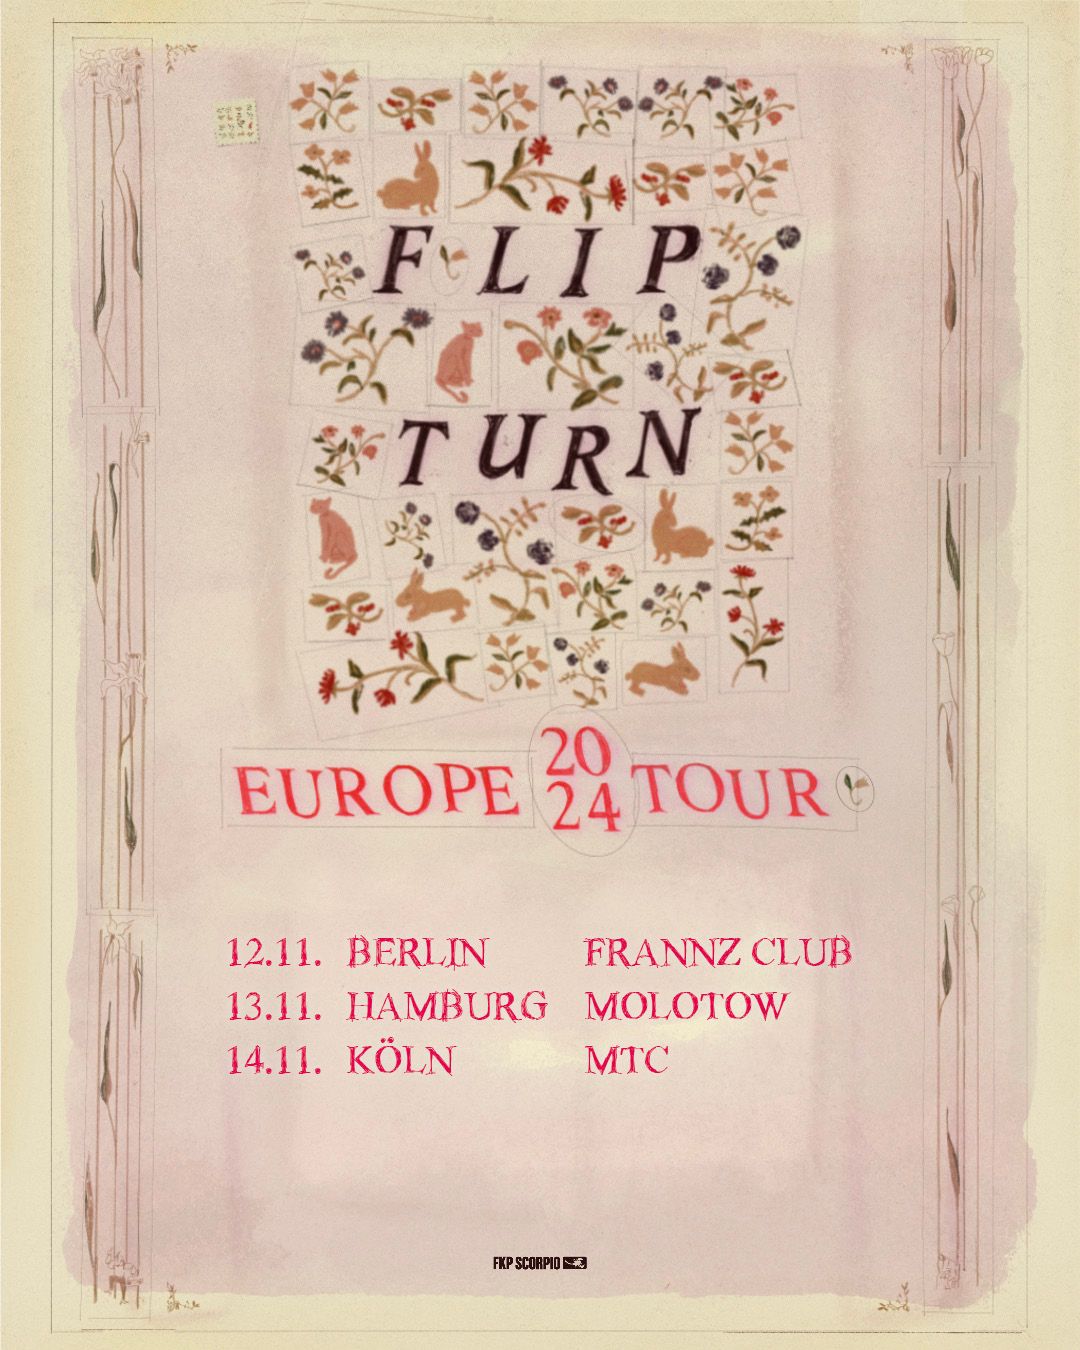 Flipturn - Berlin, Frannz Club 